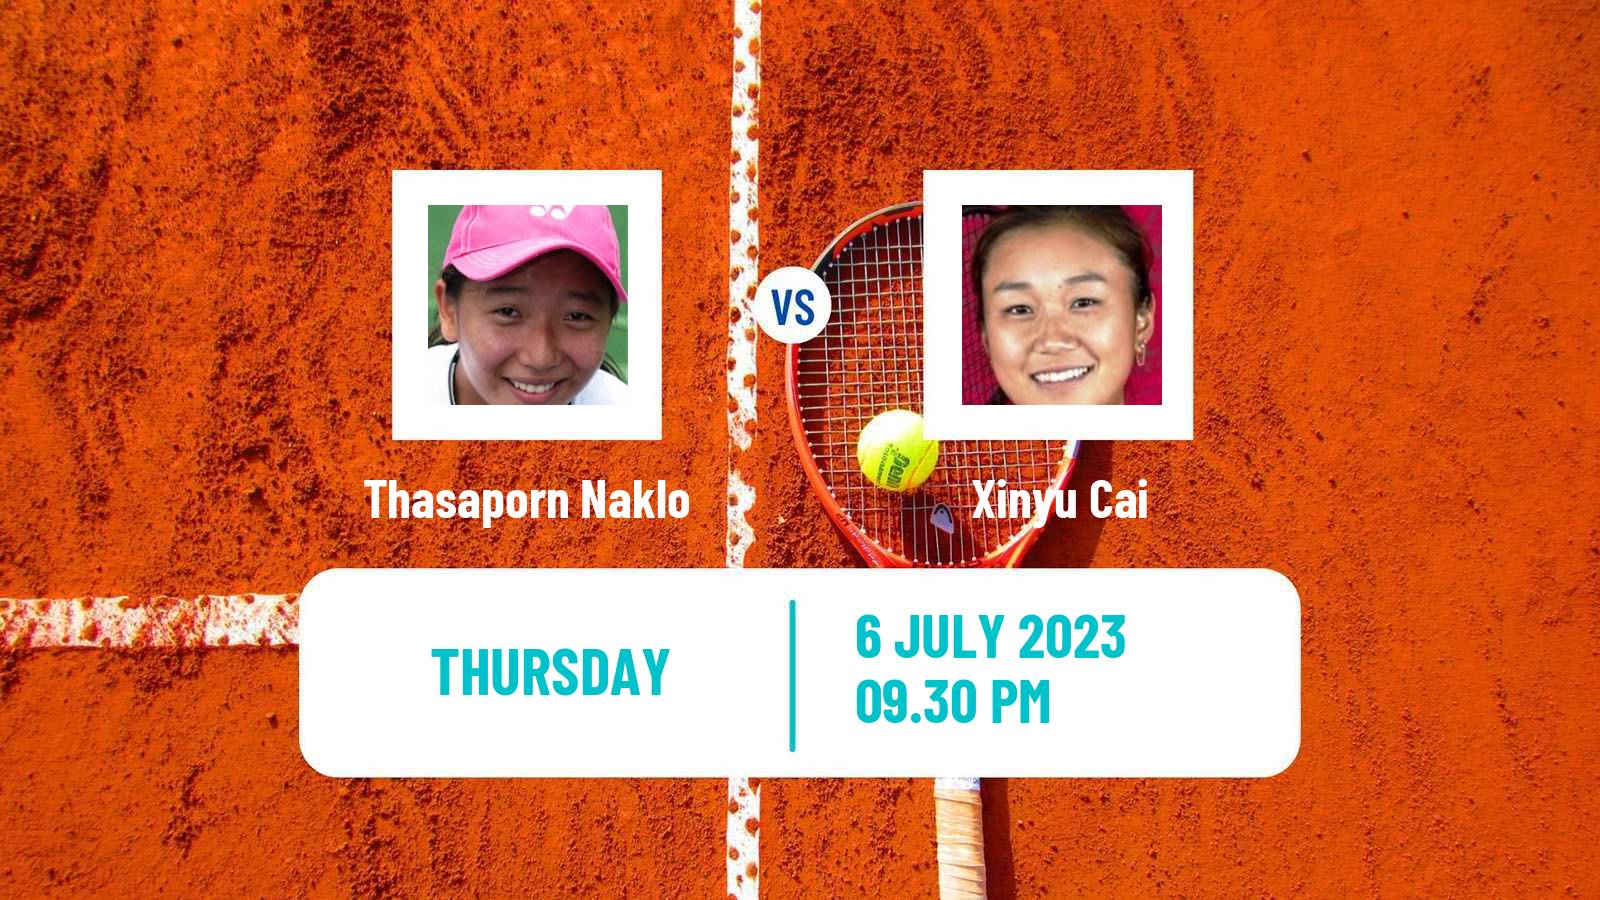 Tennis ITF W15 Tianjin 4 Women Thasaporn Naklo - Xinyu Cai